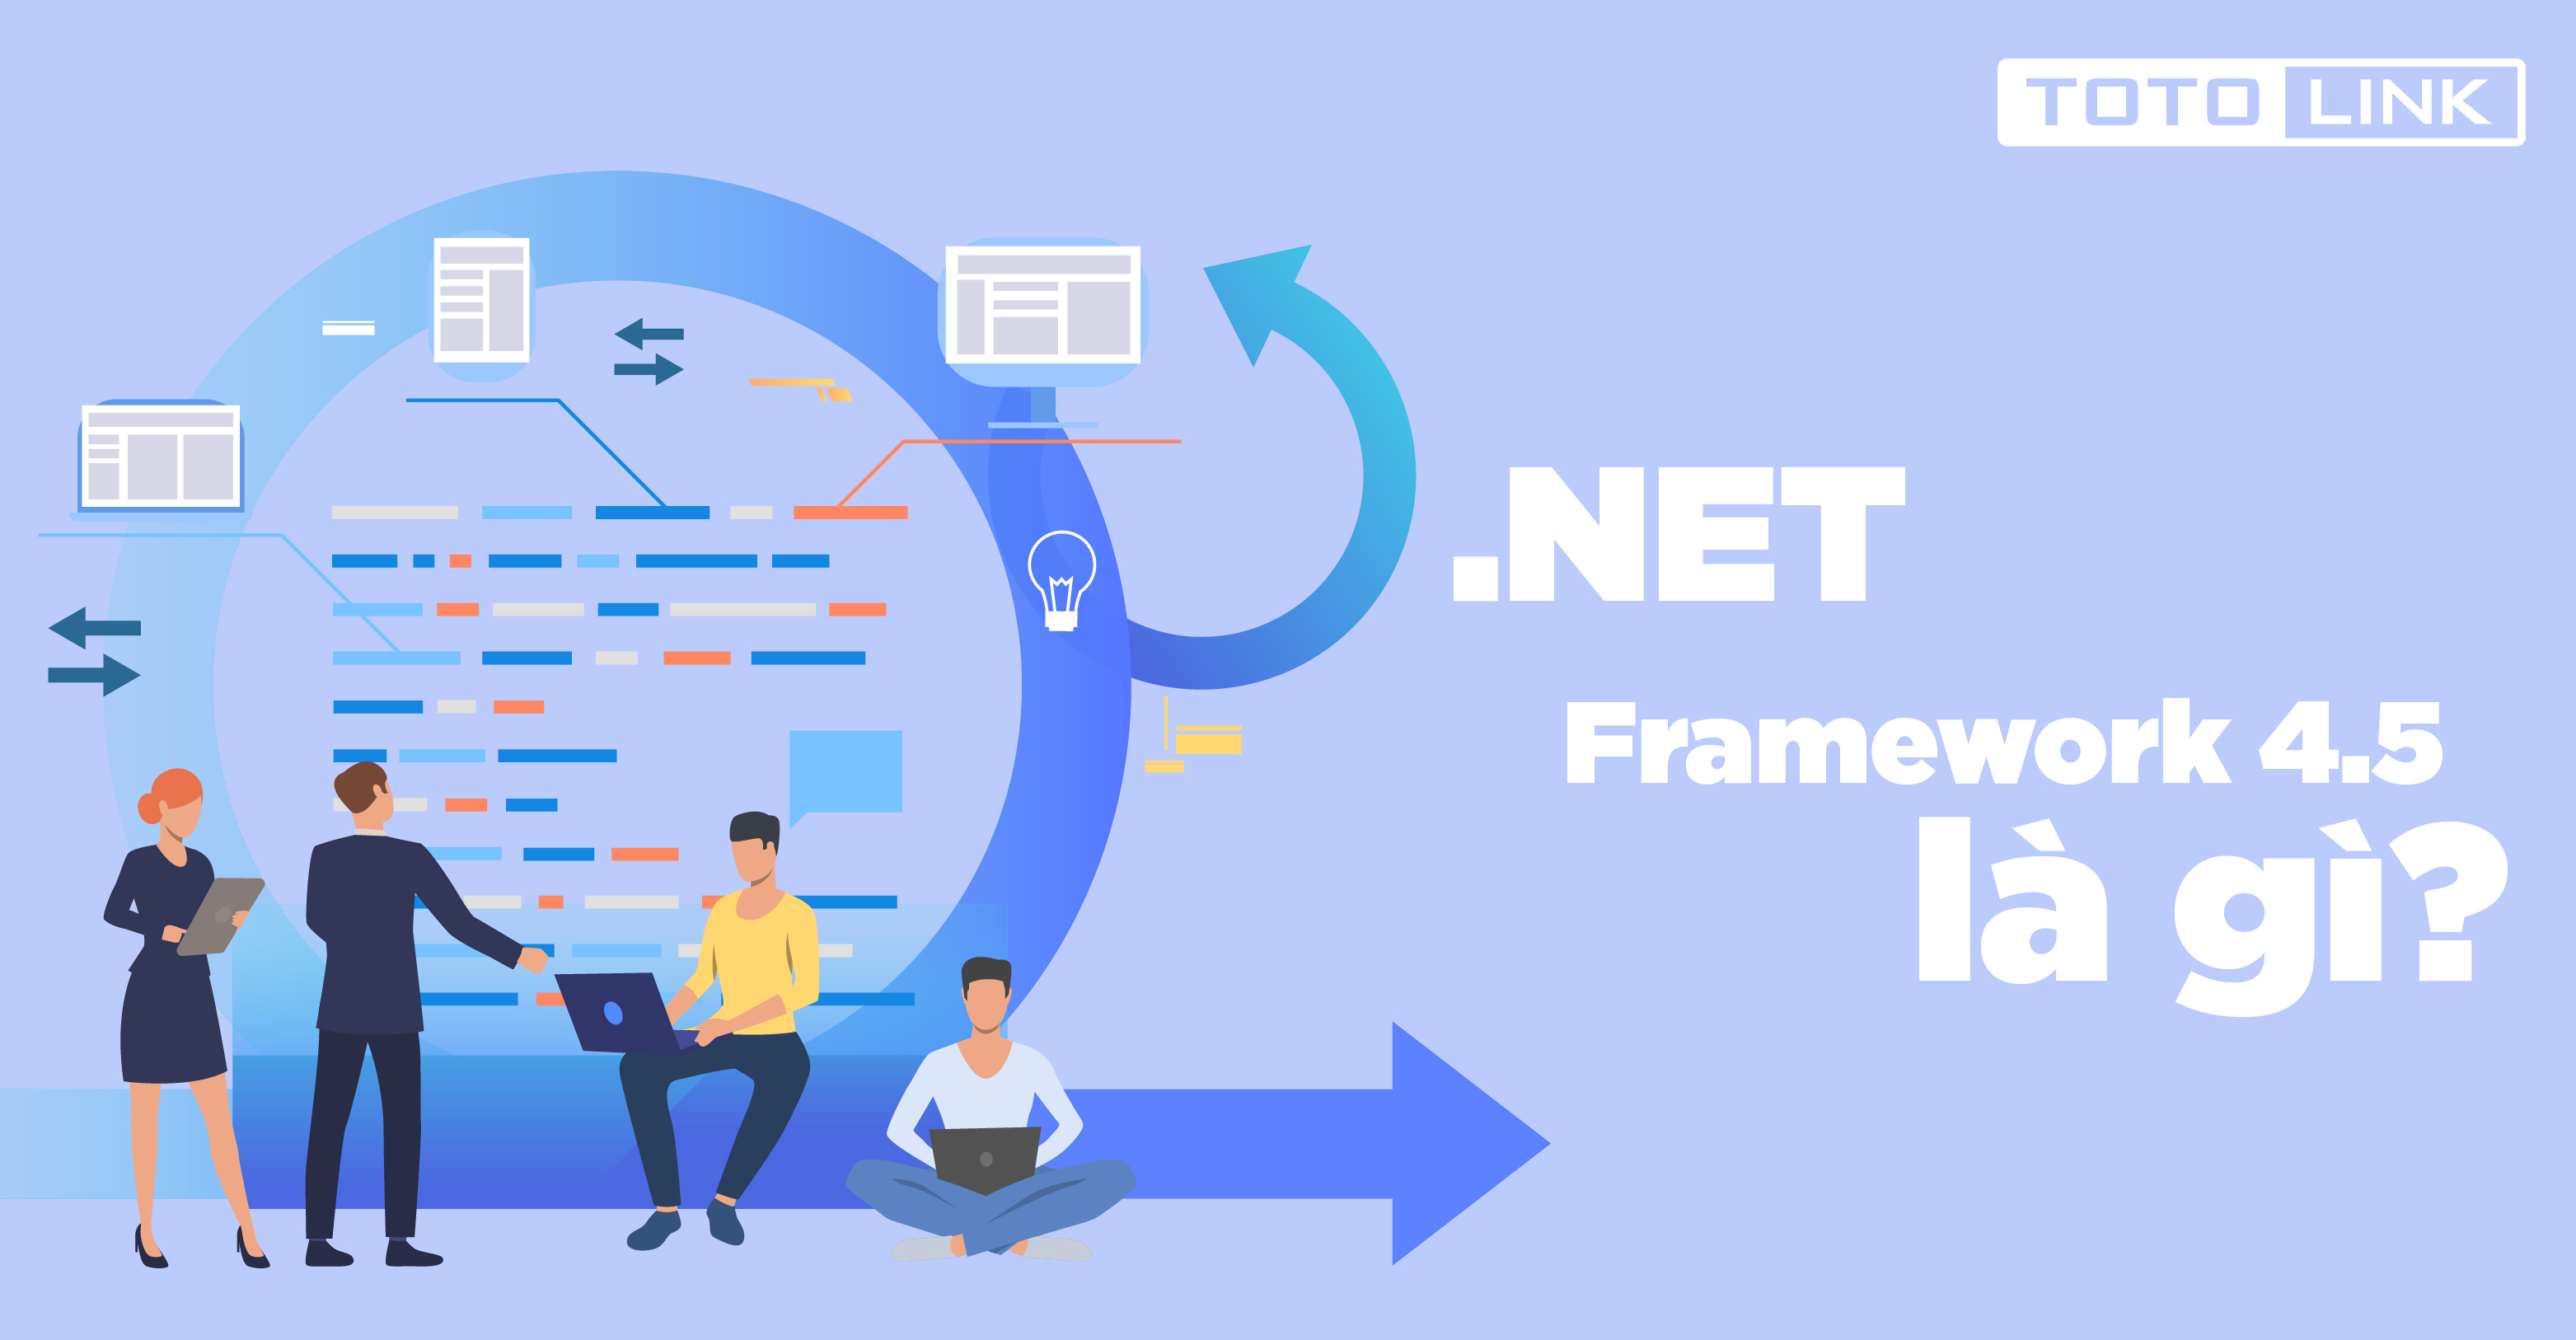 .Net Framework là gì? Tại sao cần cài đặt .Net Framework 4.5 cho PC?